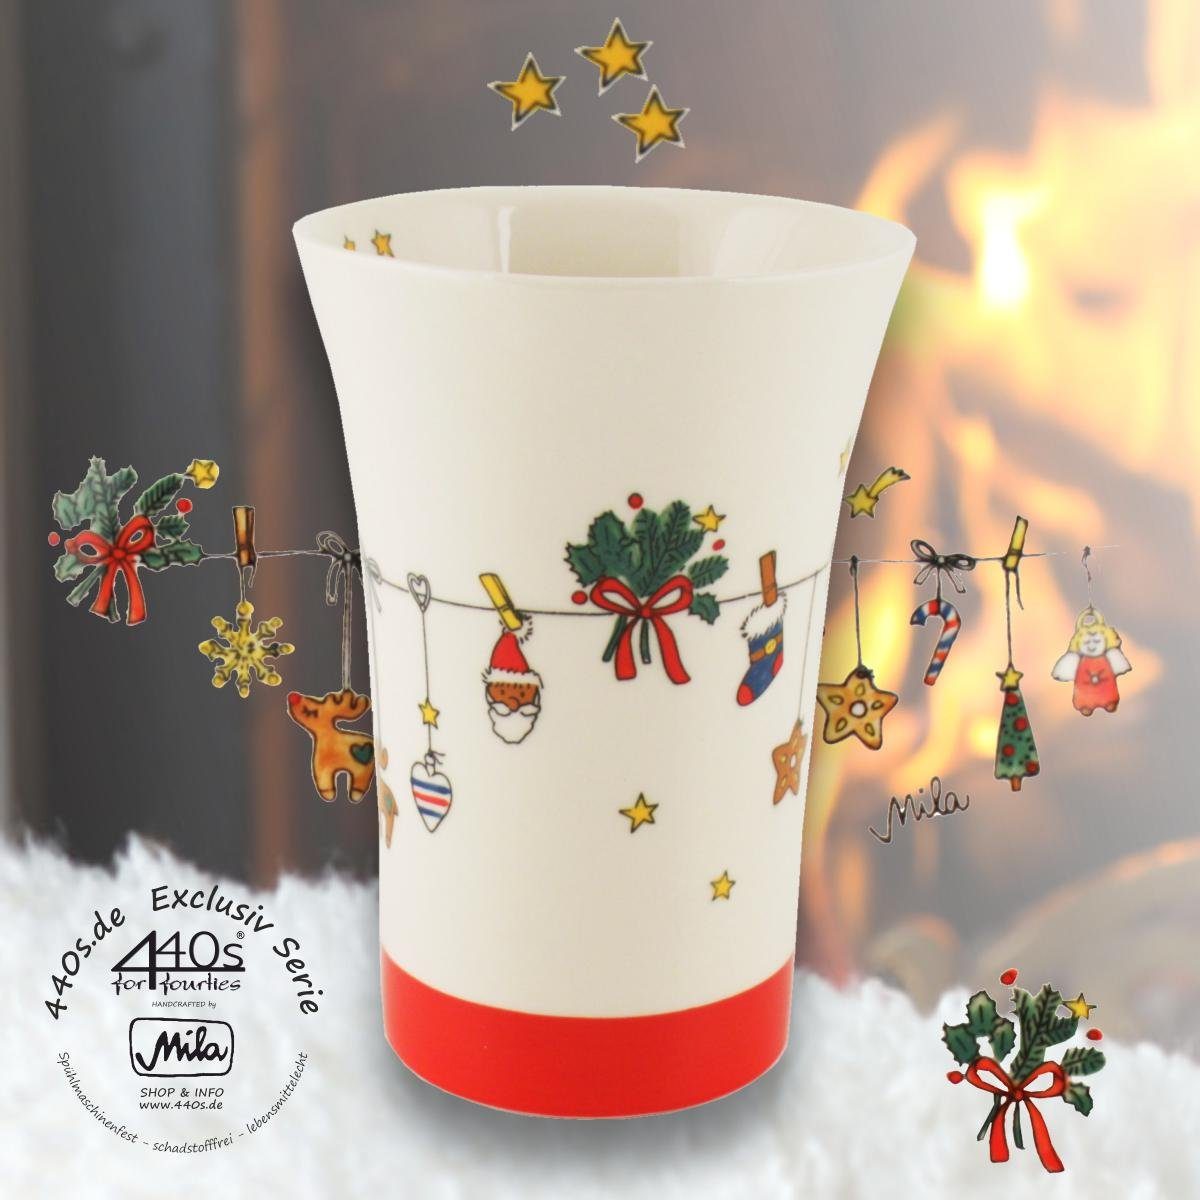 440s Becher 440s-Exklusiv Mila Keramik-Becher Pot Coffee Keramik Es sehr, Weihnachtet